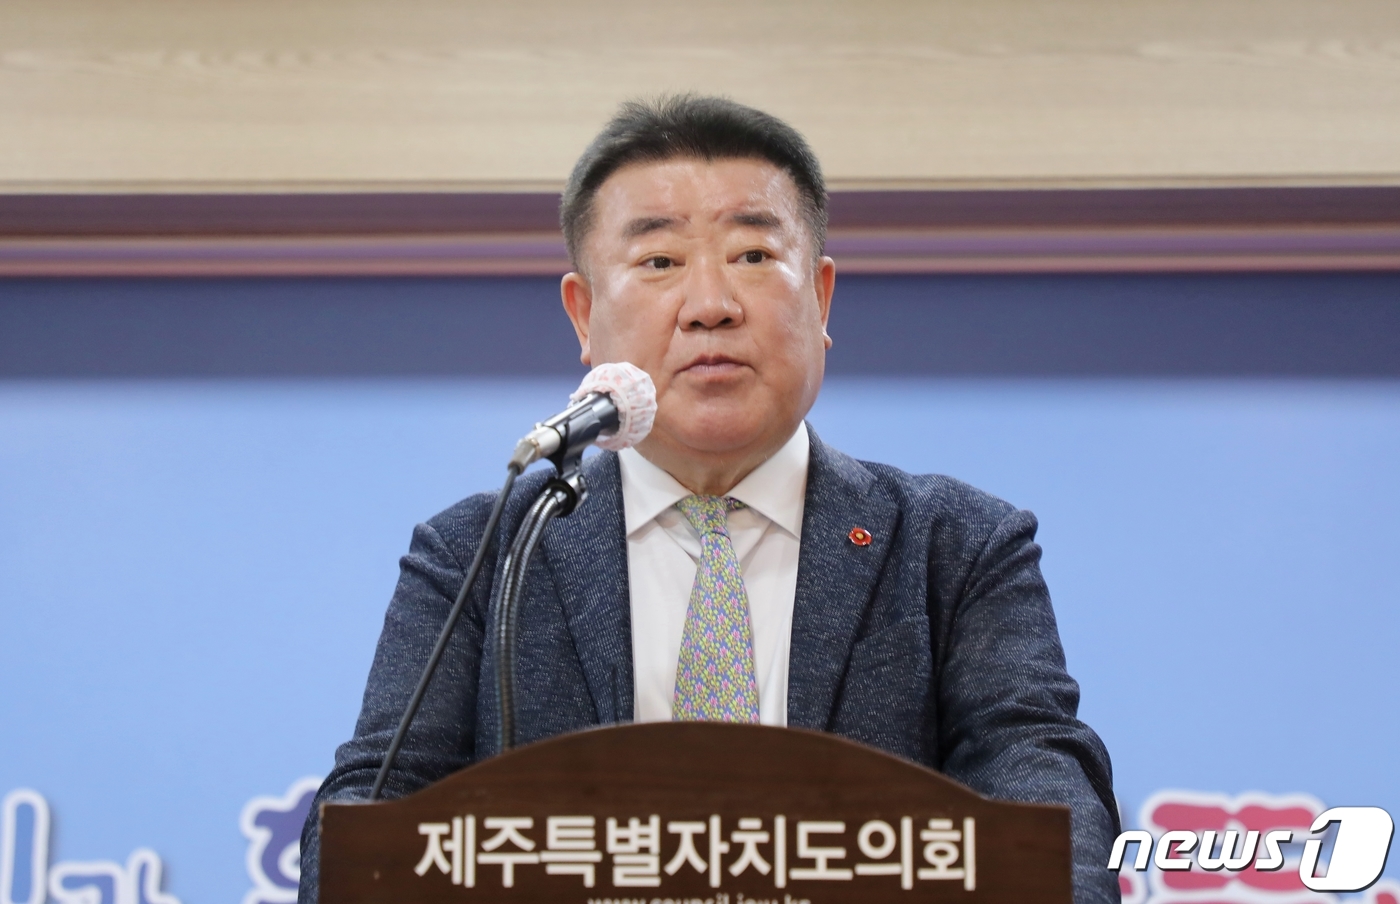 '측근 채용거부 직원에 폭언' 김우남 전 마사회장, 벌금형에 '항소'